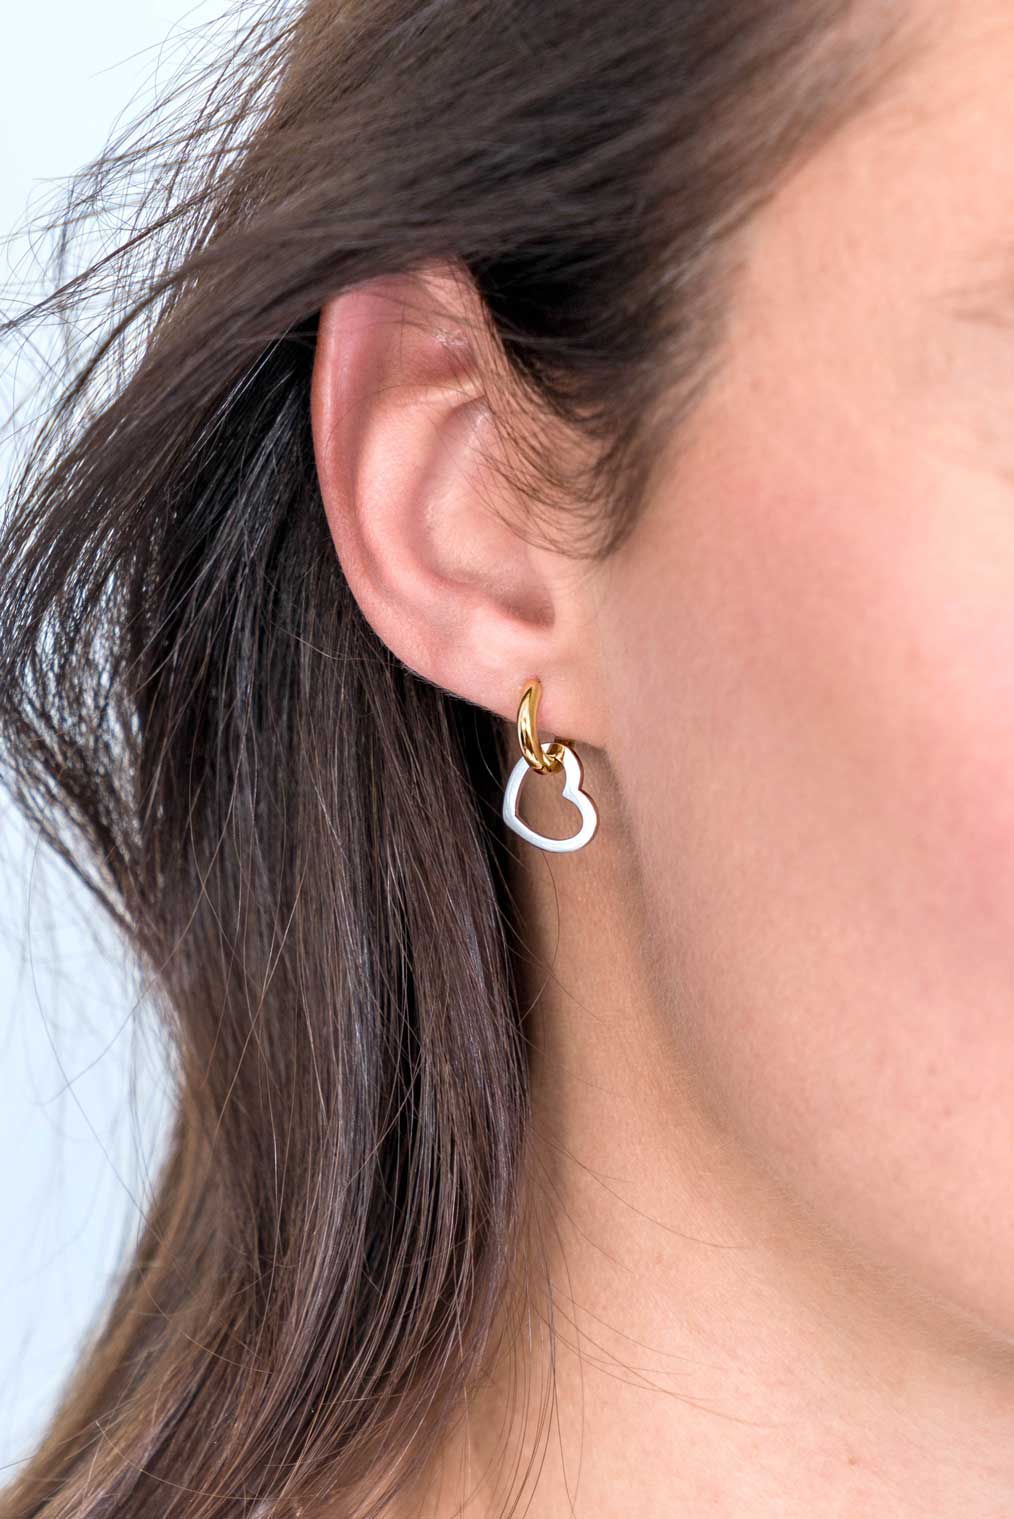 12mm ZINZI Sterling Silver Earrings Pendants Open Heart ZICH2197 (excl. hoop earrings)